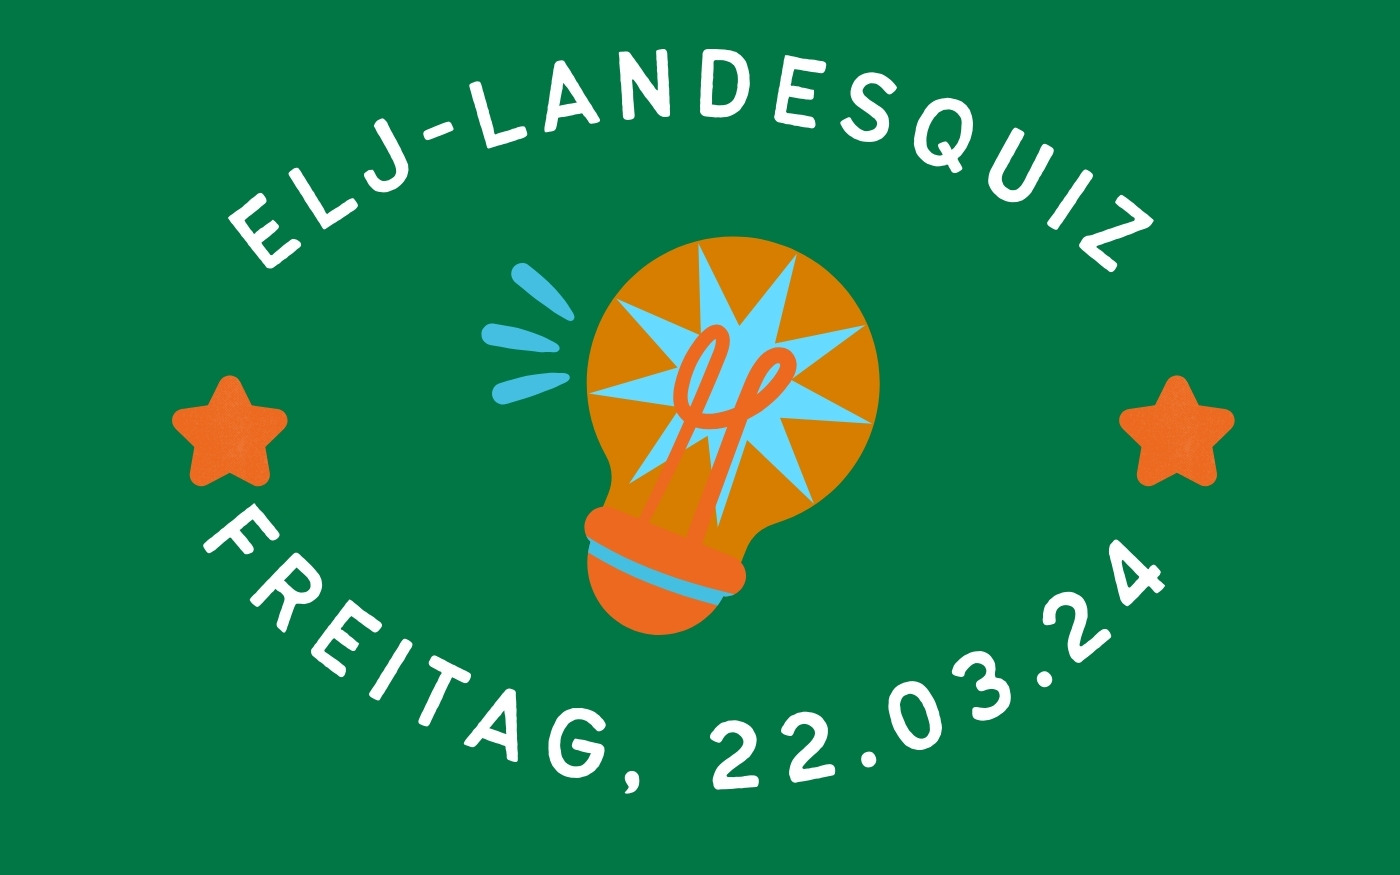 Landesquiz Veranstaltung Termin 2023